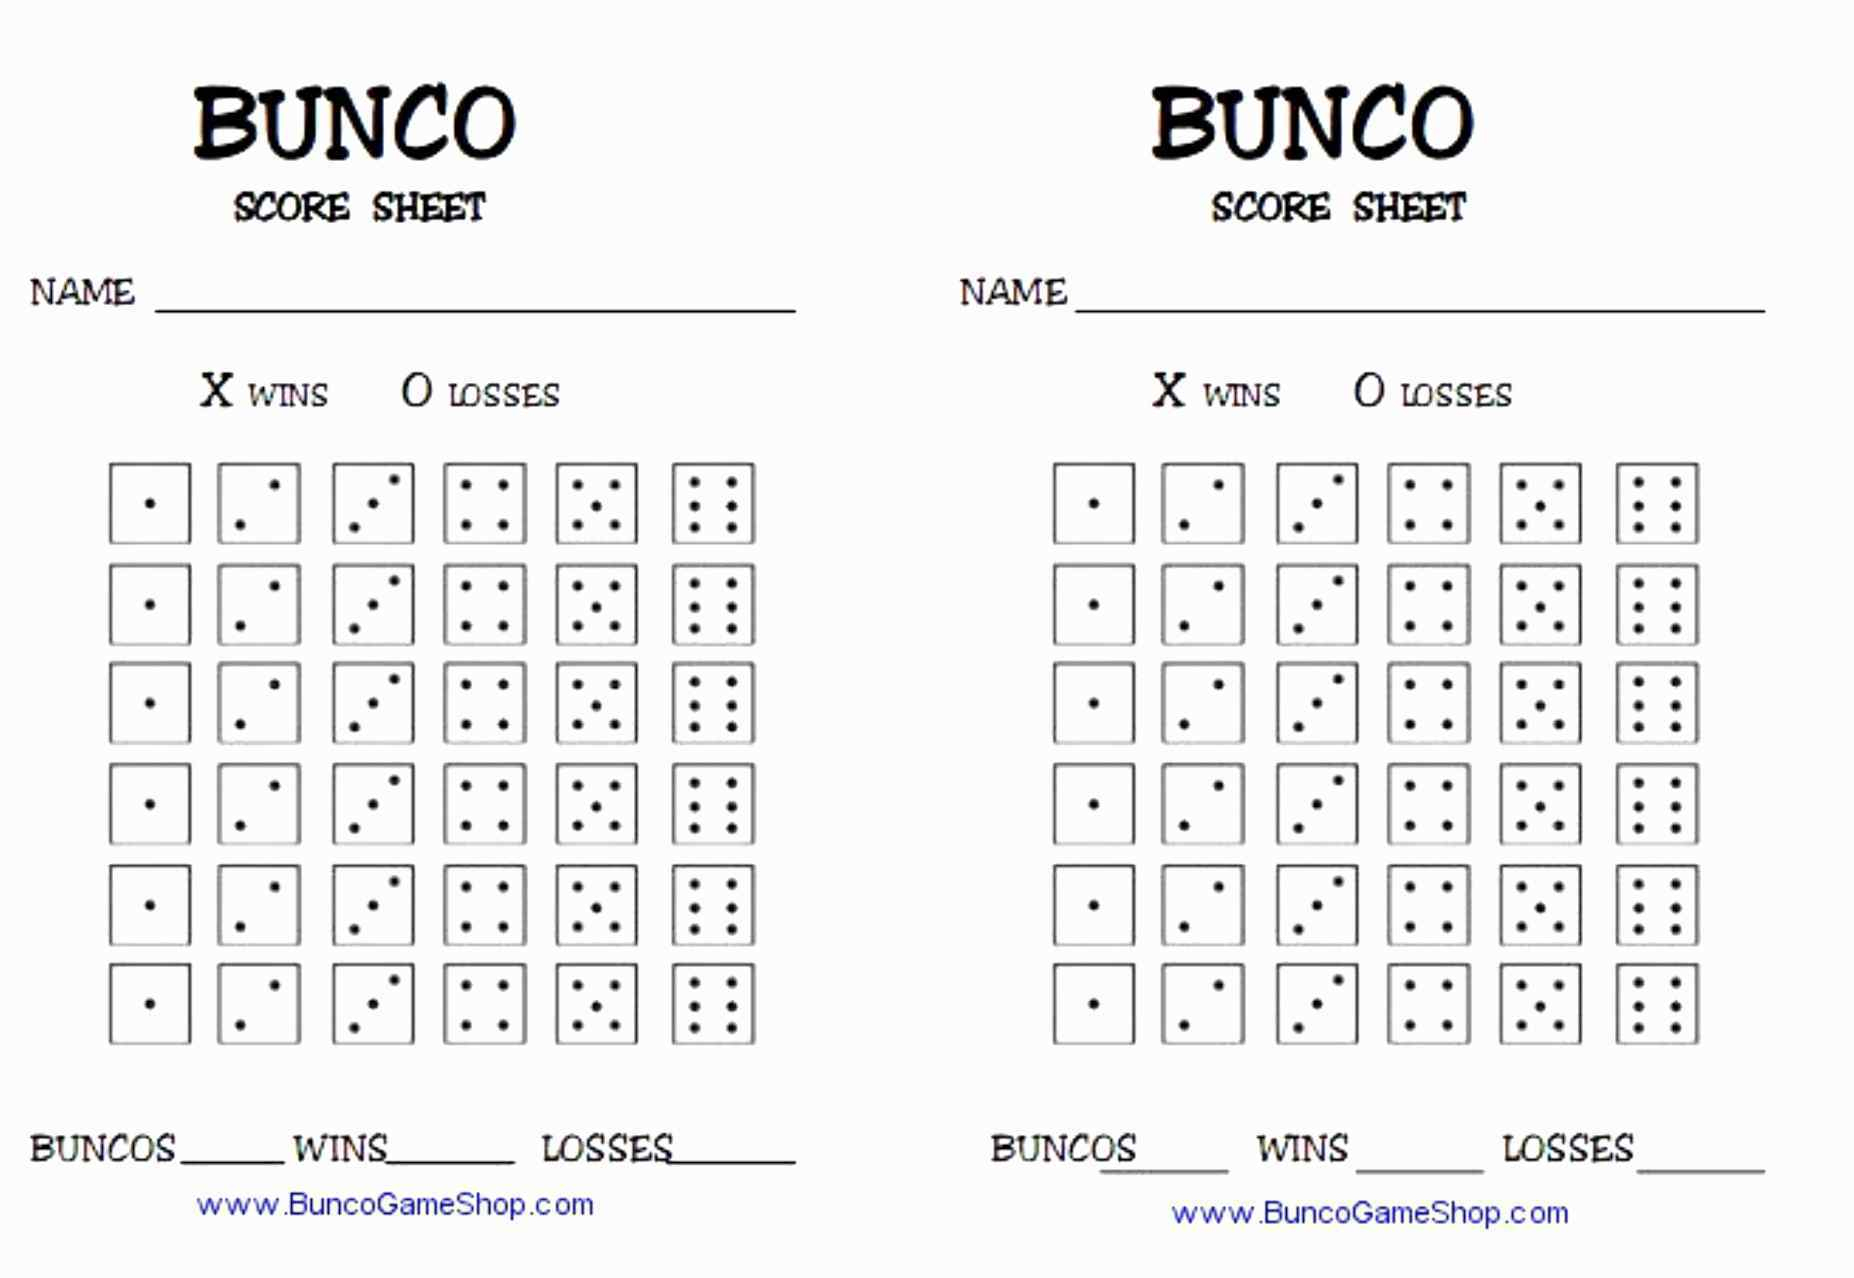 Bunco score sheets pdf